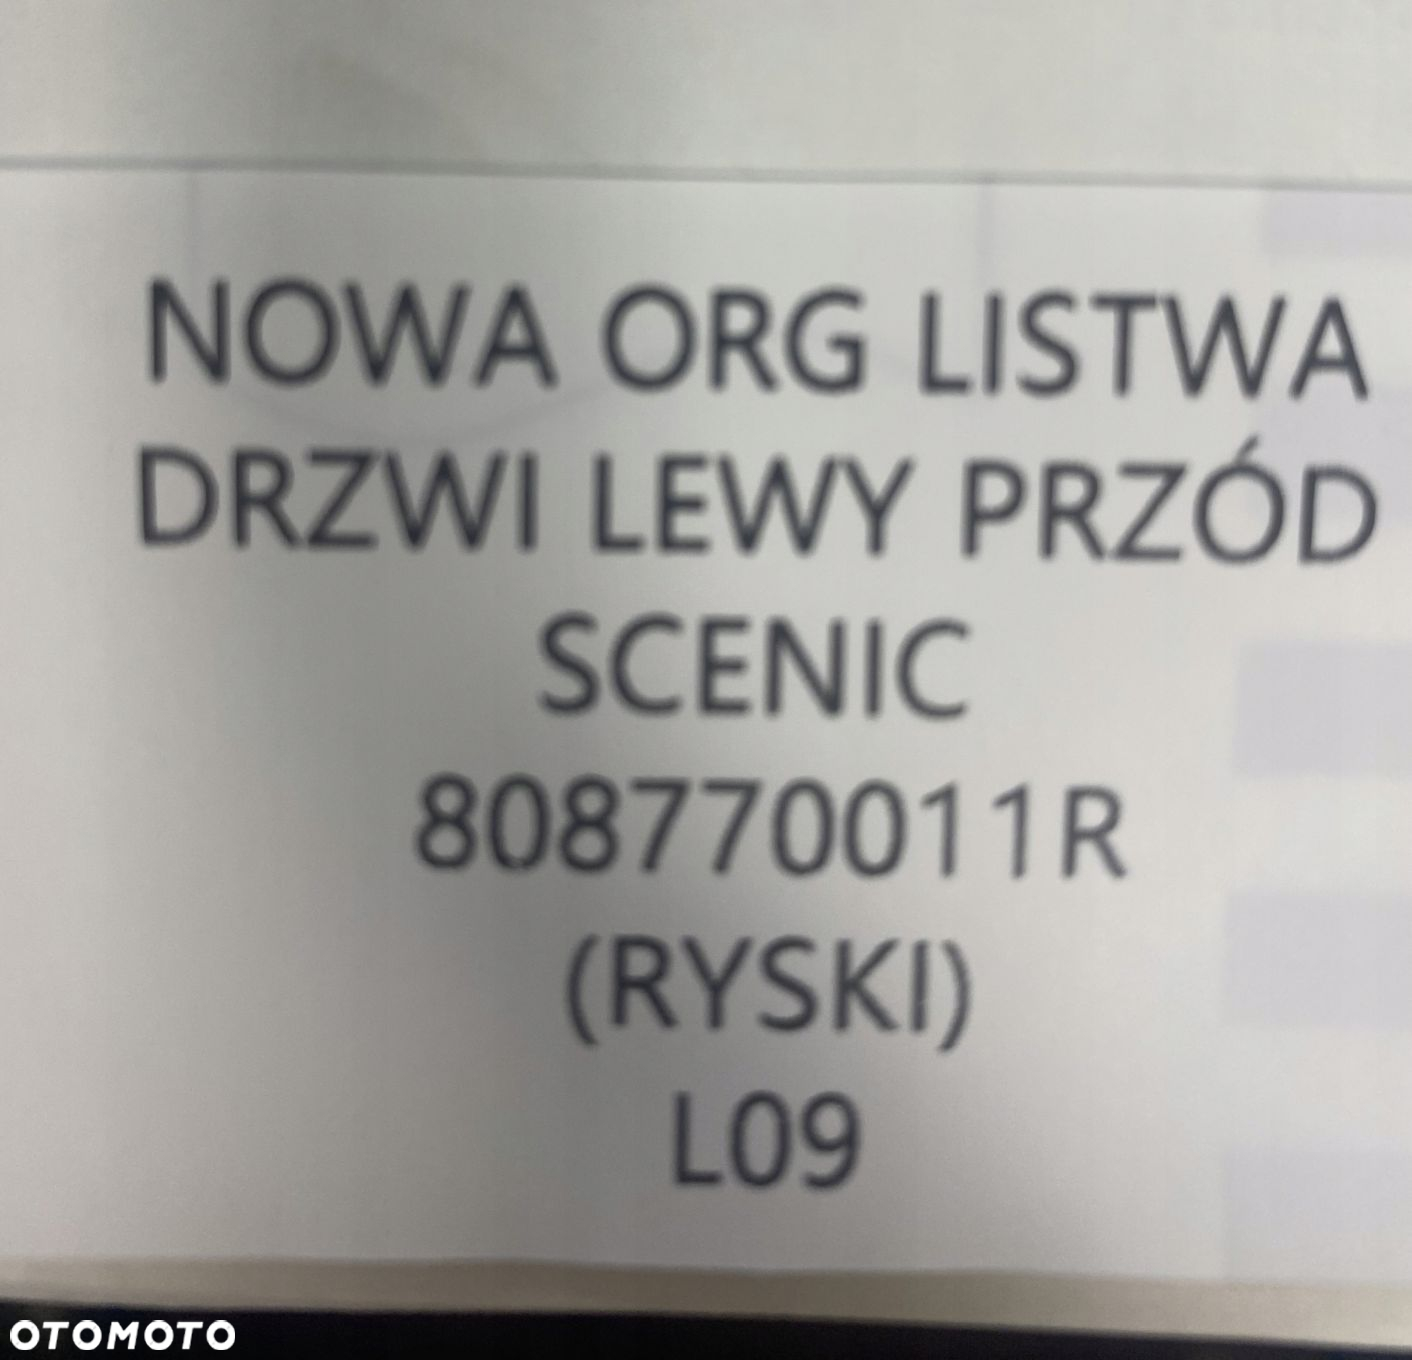 NOWA ORG LISTWA DRZWI LEWY PRZÓD RENAULT SCENIC III 3 + 808770011R - 4